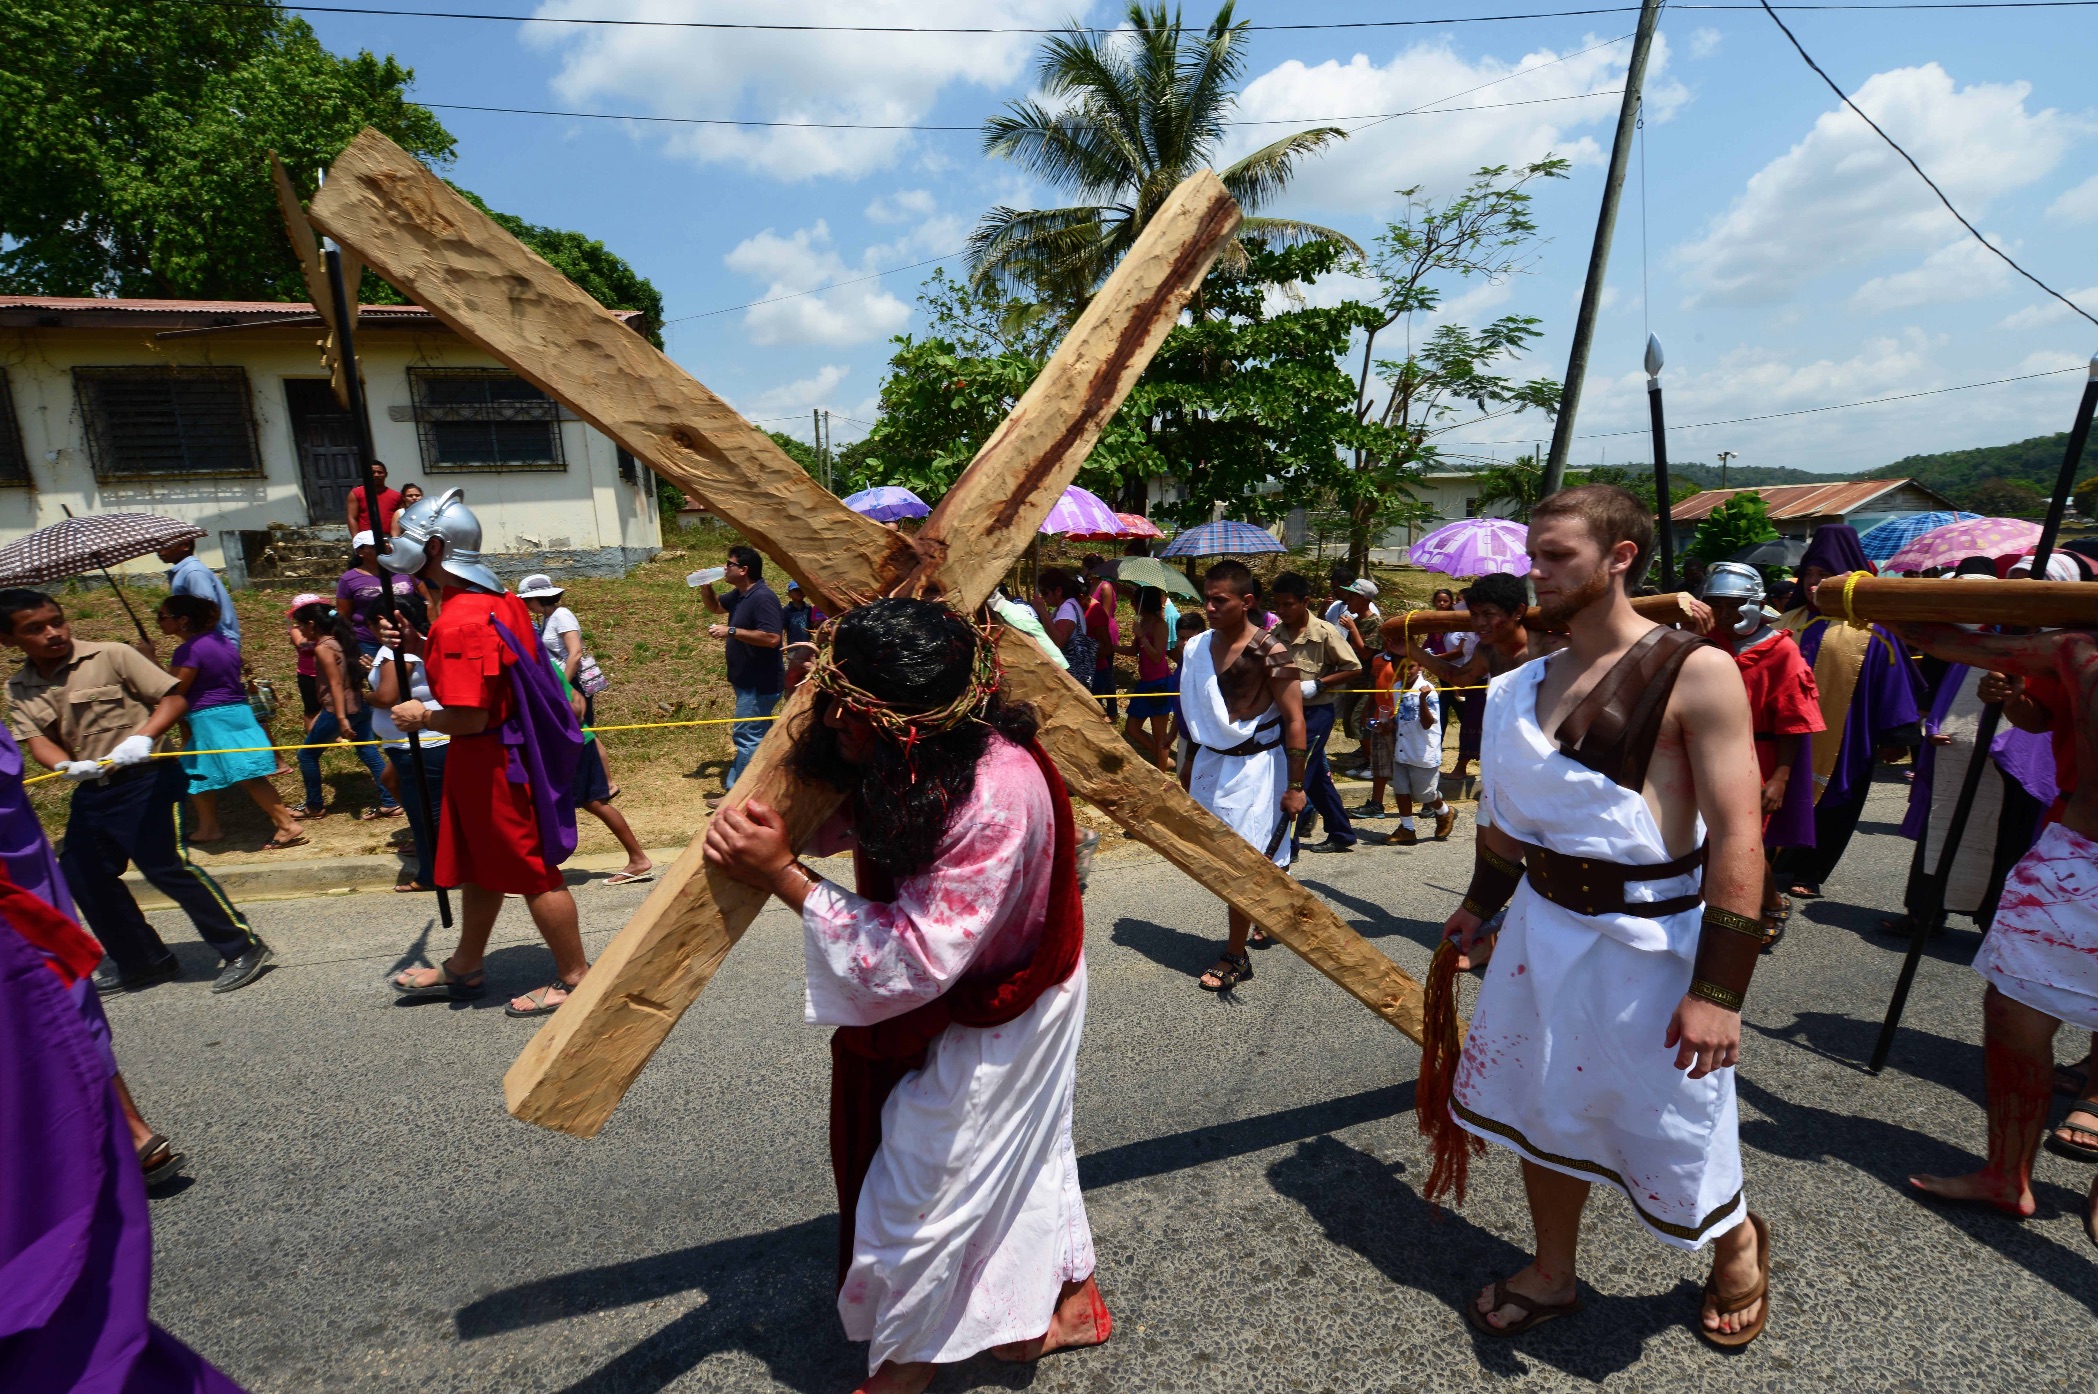 Celebrando a Páscoa em Belize | The Holy &amp; the Heartfelt | 2